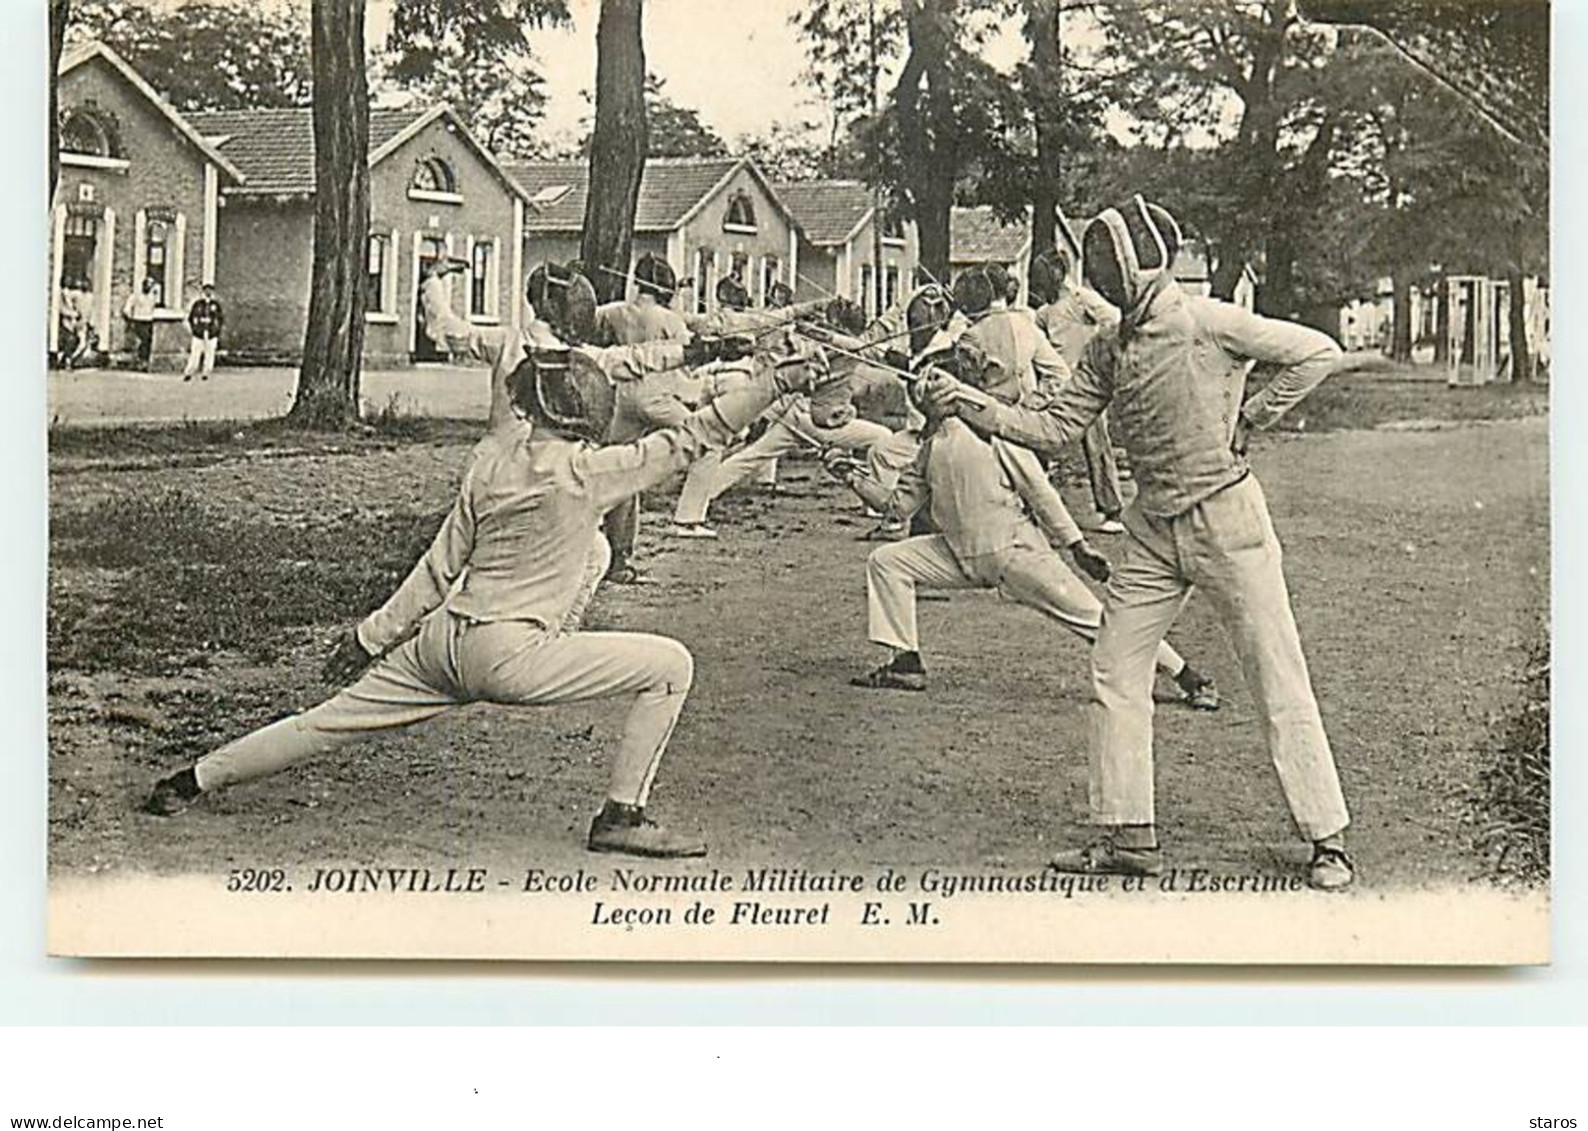 JOINVILLE - N°5202 Ecole Normale Militaire De Gymnastique Et D'Escrime - Leçon De Fleuret - Fencing